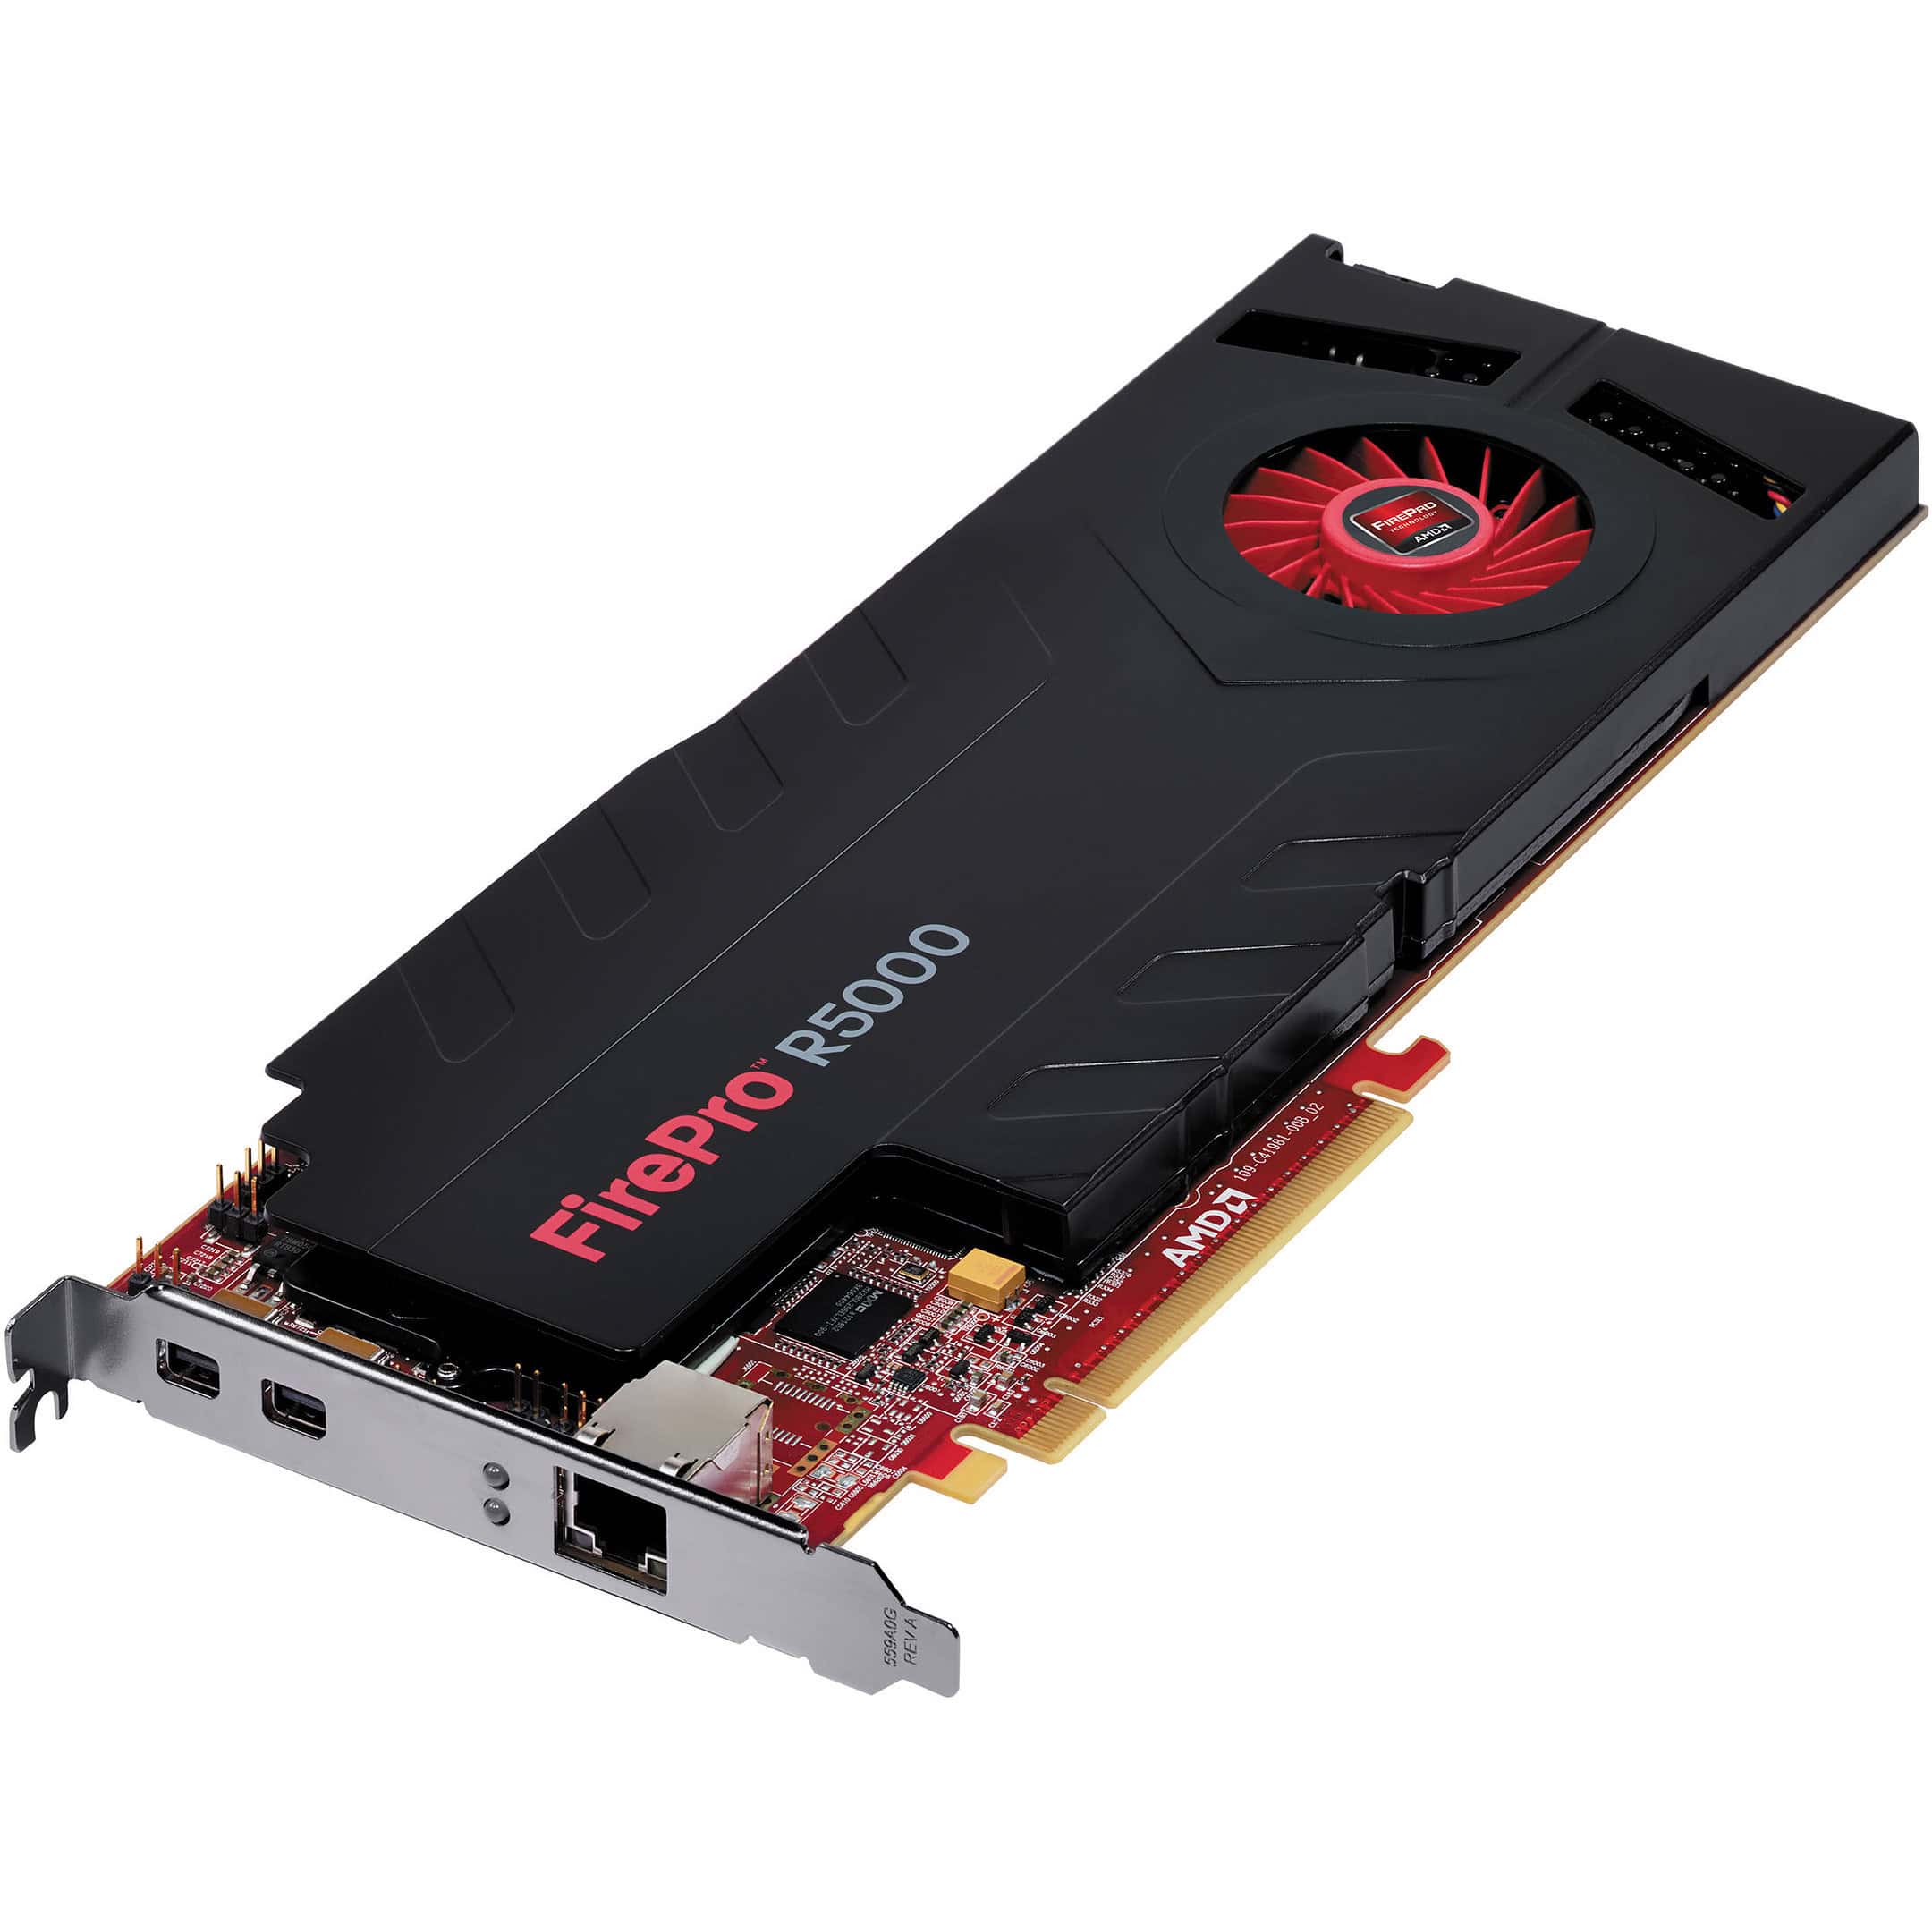 ATI Radeon Firepro R5000 GPU